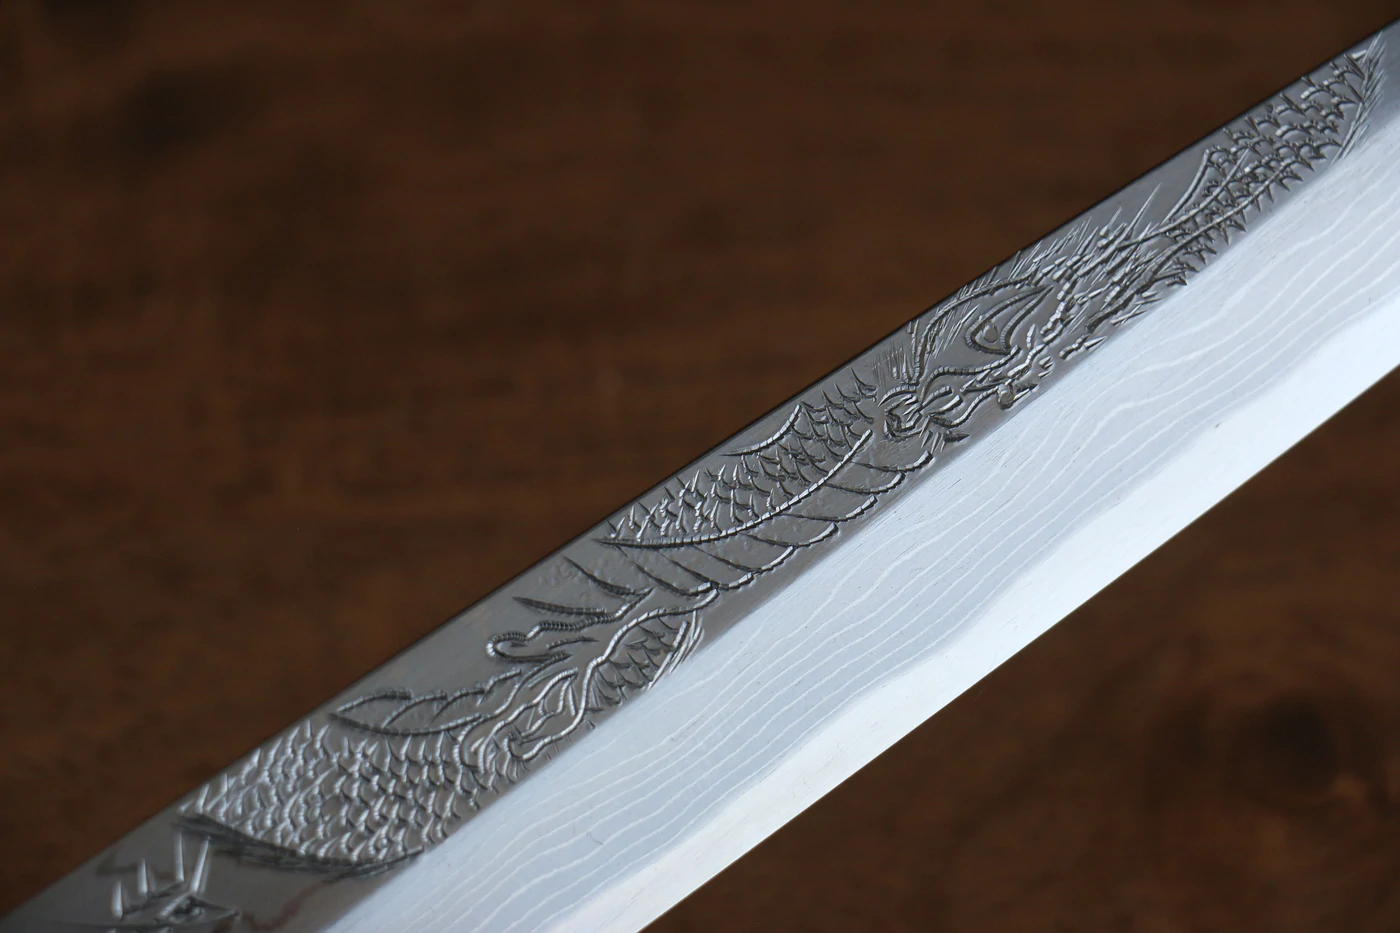 Marke Sakai Takayuki Thien Long Uzushio-Serie, Nr. 2 blauer Stahl mit geschnitzter Drachenform, Yanagiba 300 mm Spezial-Shashimi-Fischmesser, Messergriff aus rotem Ebenholz, inklusive Messerscheide, hochwertiges echtes japanisches Messer 9